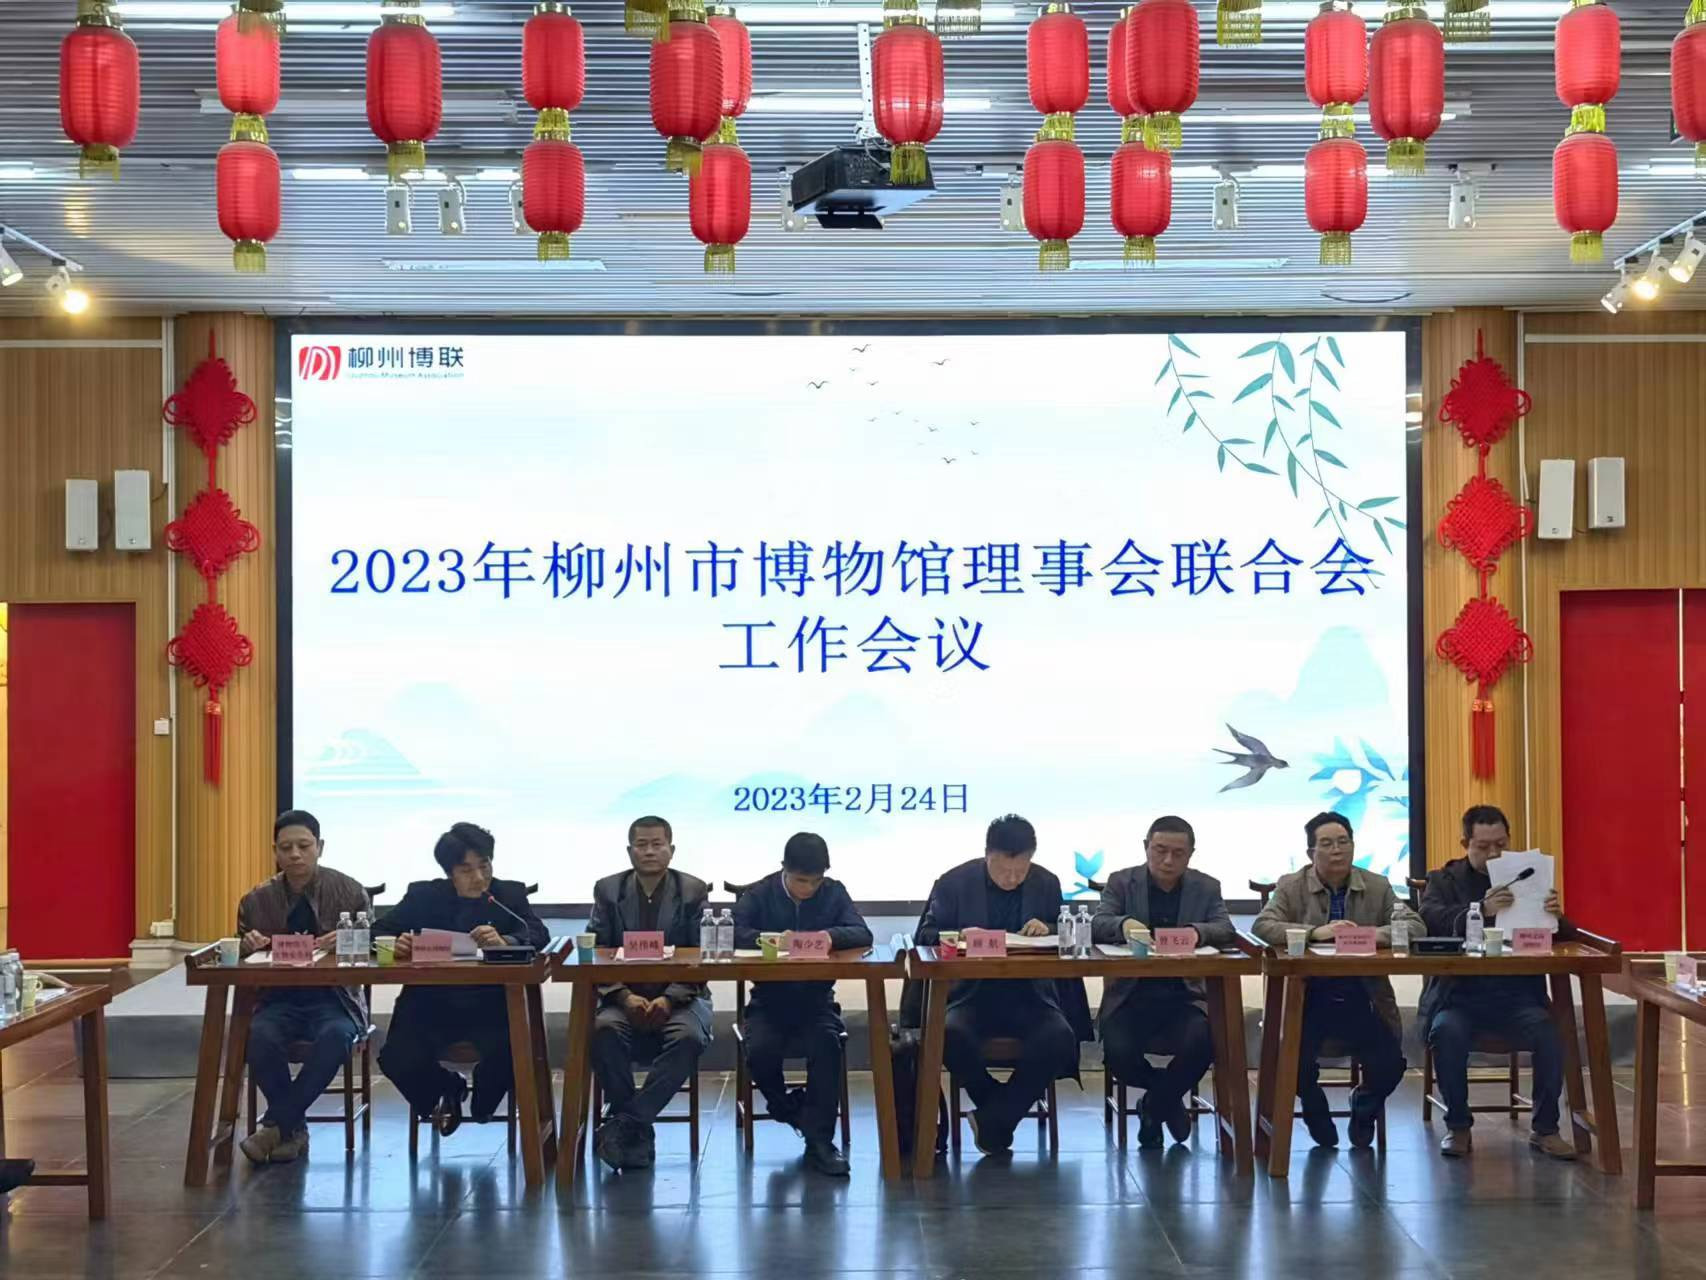 2023年柳州市博物馆理事会联合会工作会议在柳州文庙博物馆召开